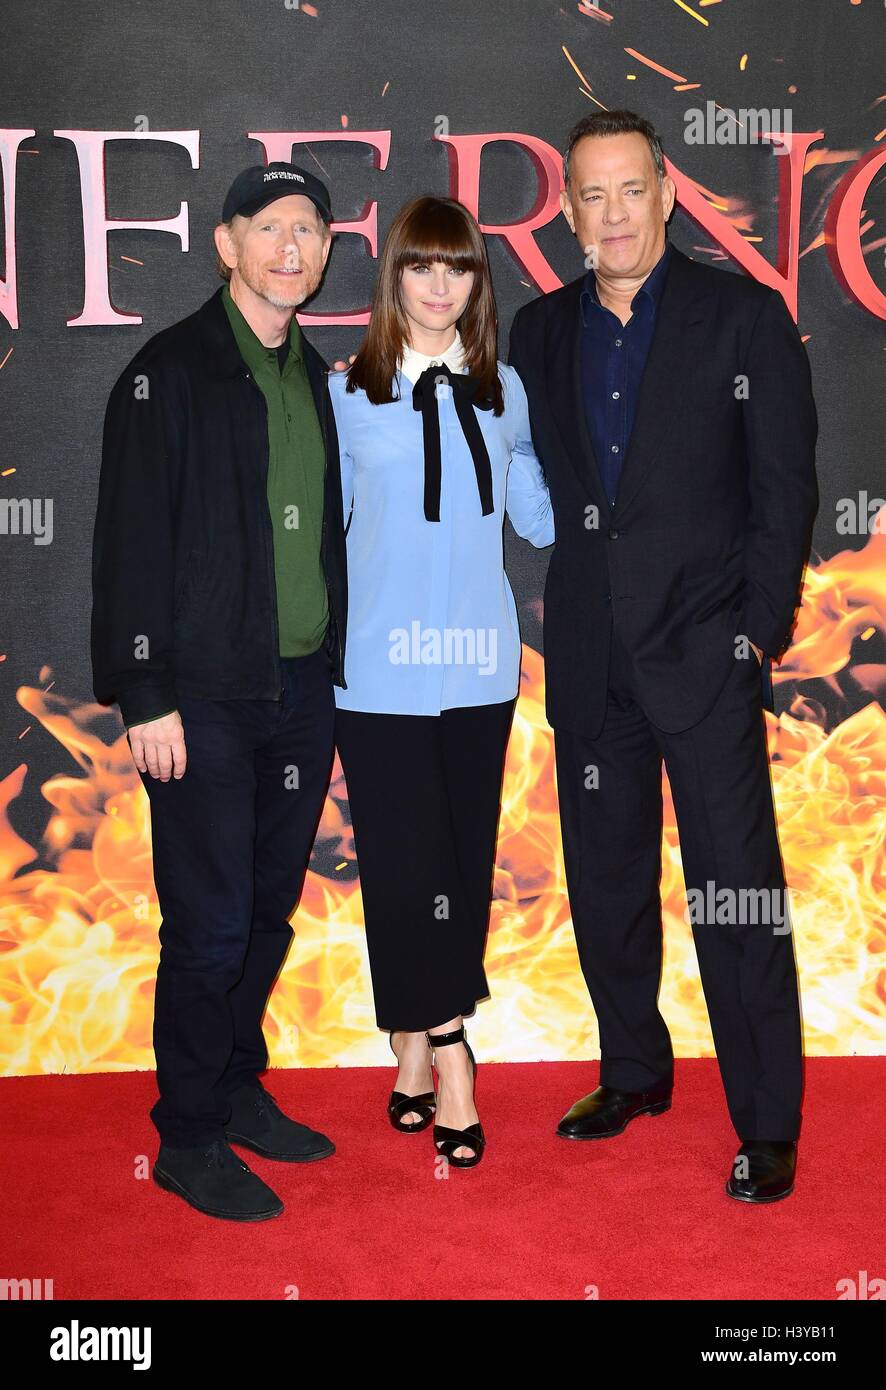 Regisseur Ron Howard (links) und Sterne Felicity Jones und Tom Hanks, die Teilnahme an einem Fototermin für ihren neuen Film Inferno im Corinthia Hotel in London. Stockfoto